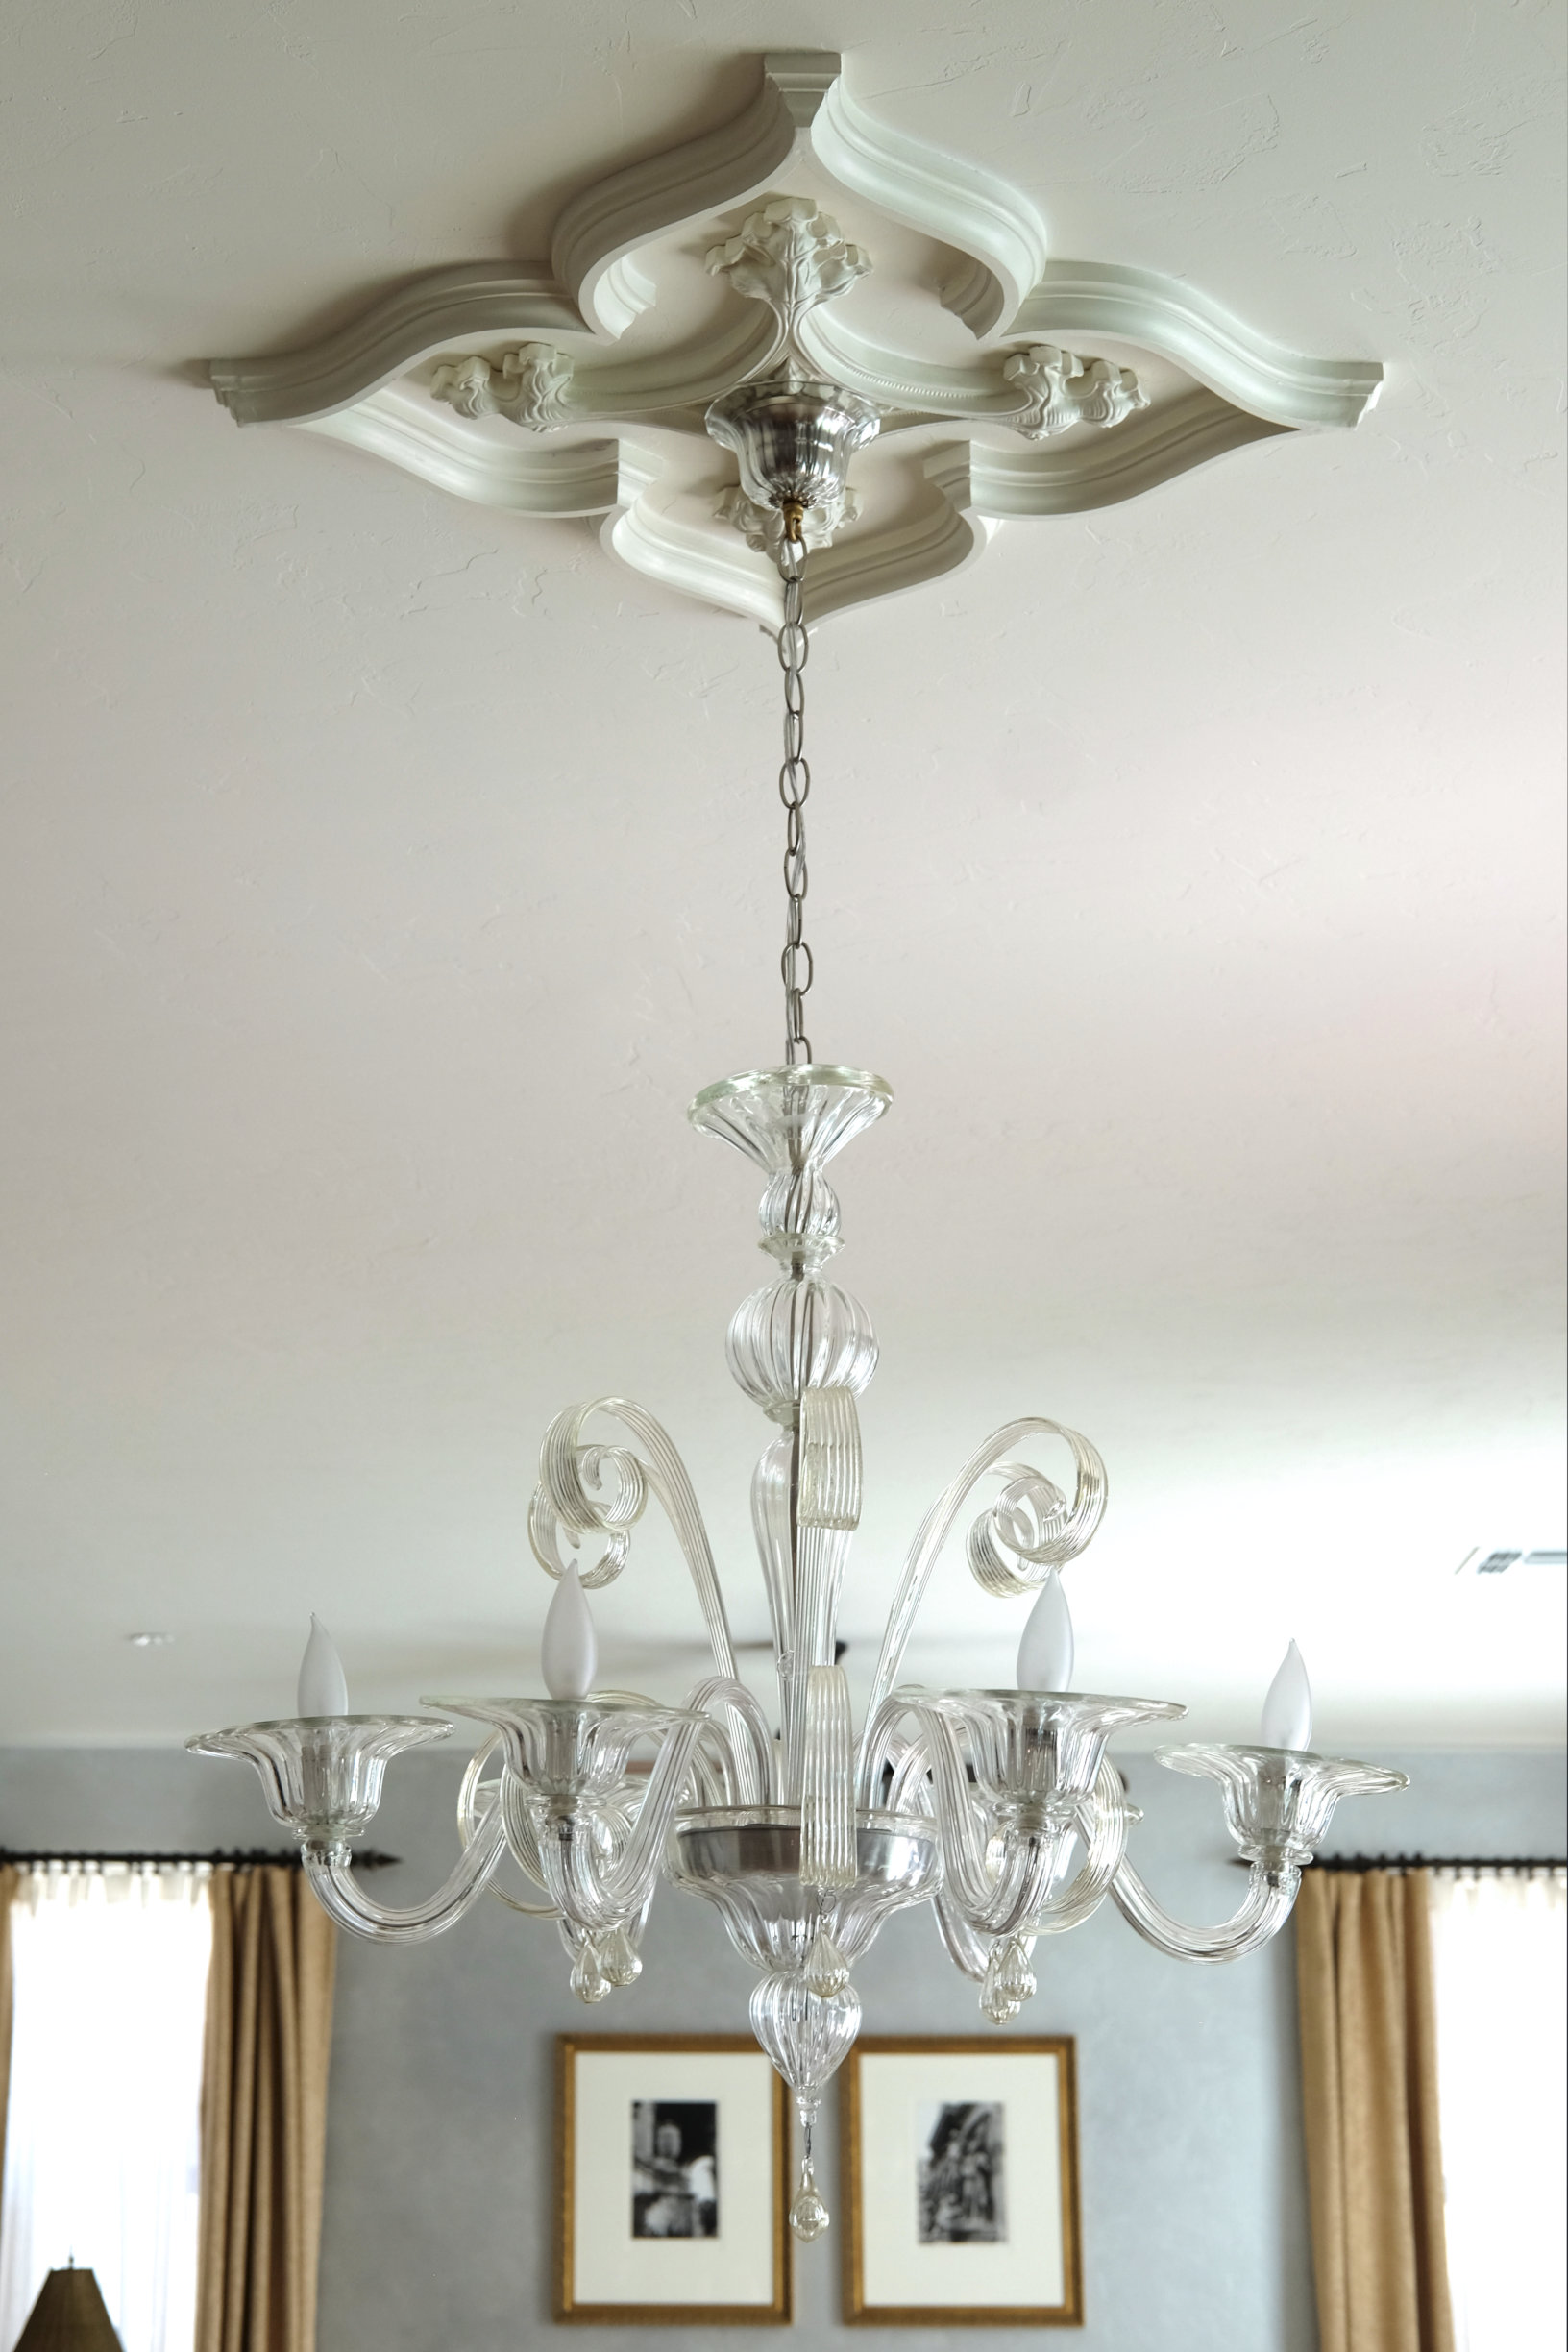 Venetian glass custom Murano chandelier with Venetian Gothic ceiling medallion